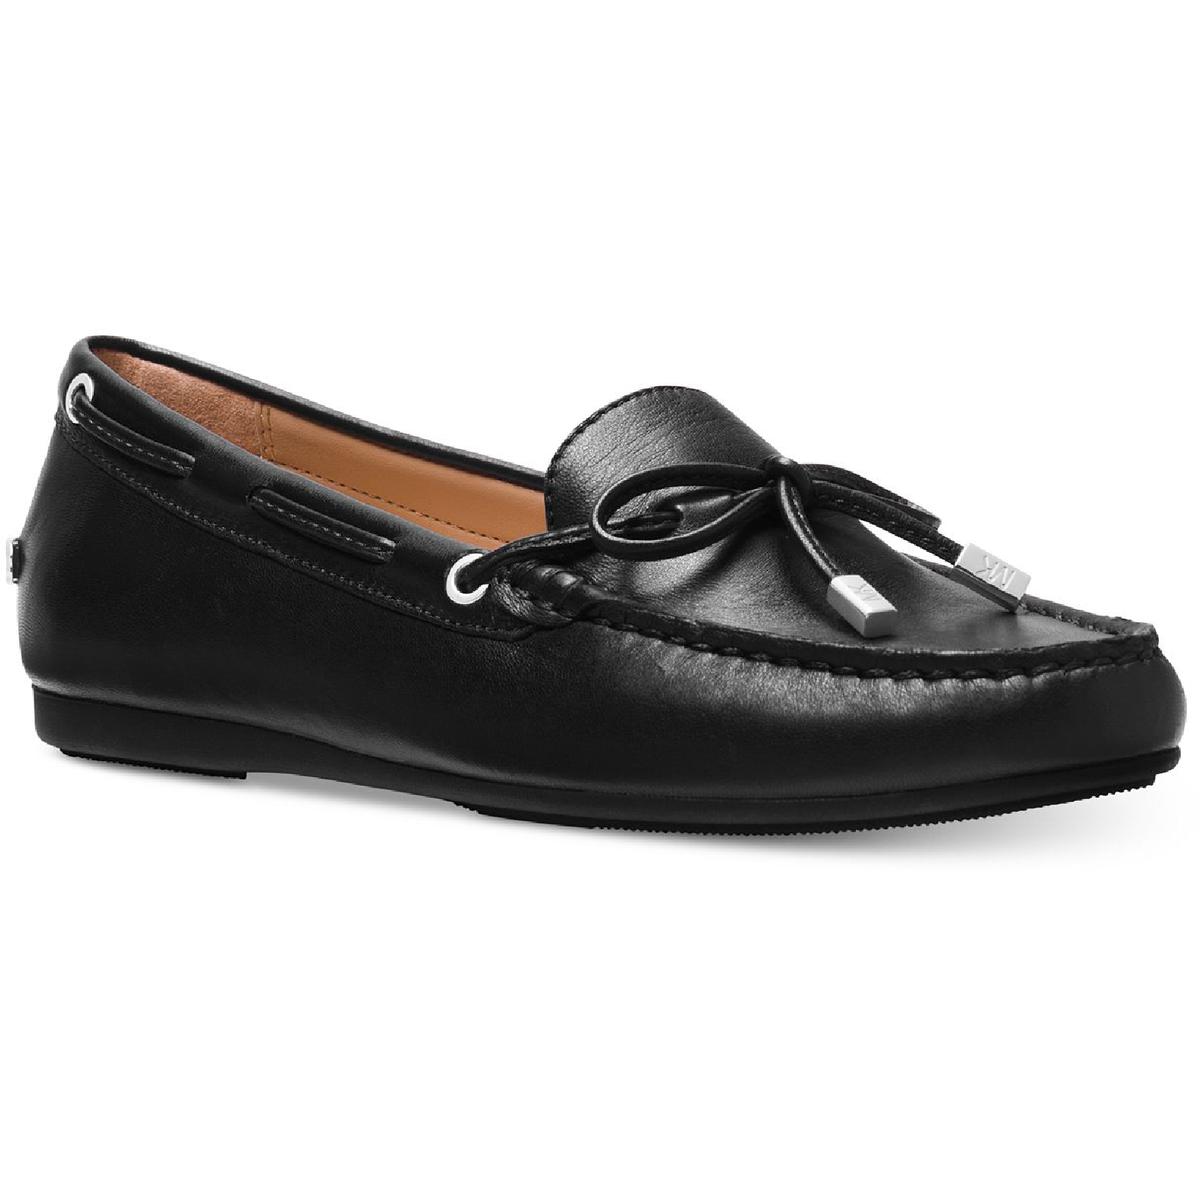 Michael Kors Sutton Shoes Black Leather Tie Sz 9 M for sale online | eBay